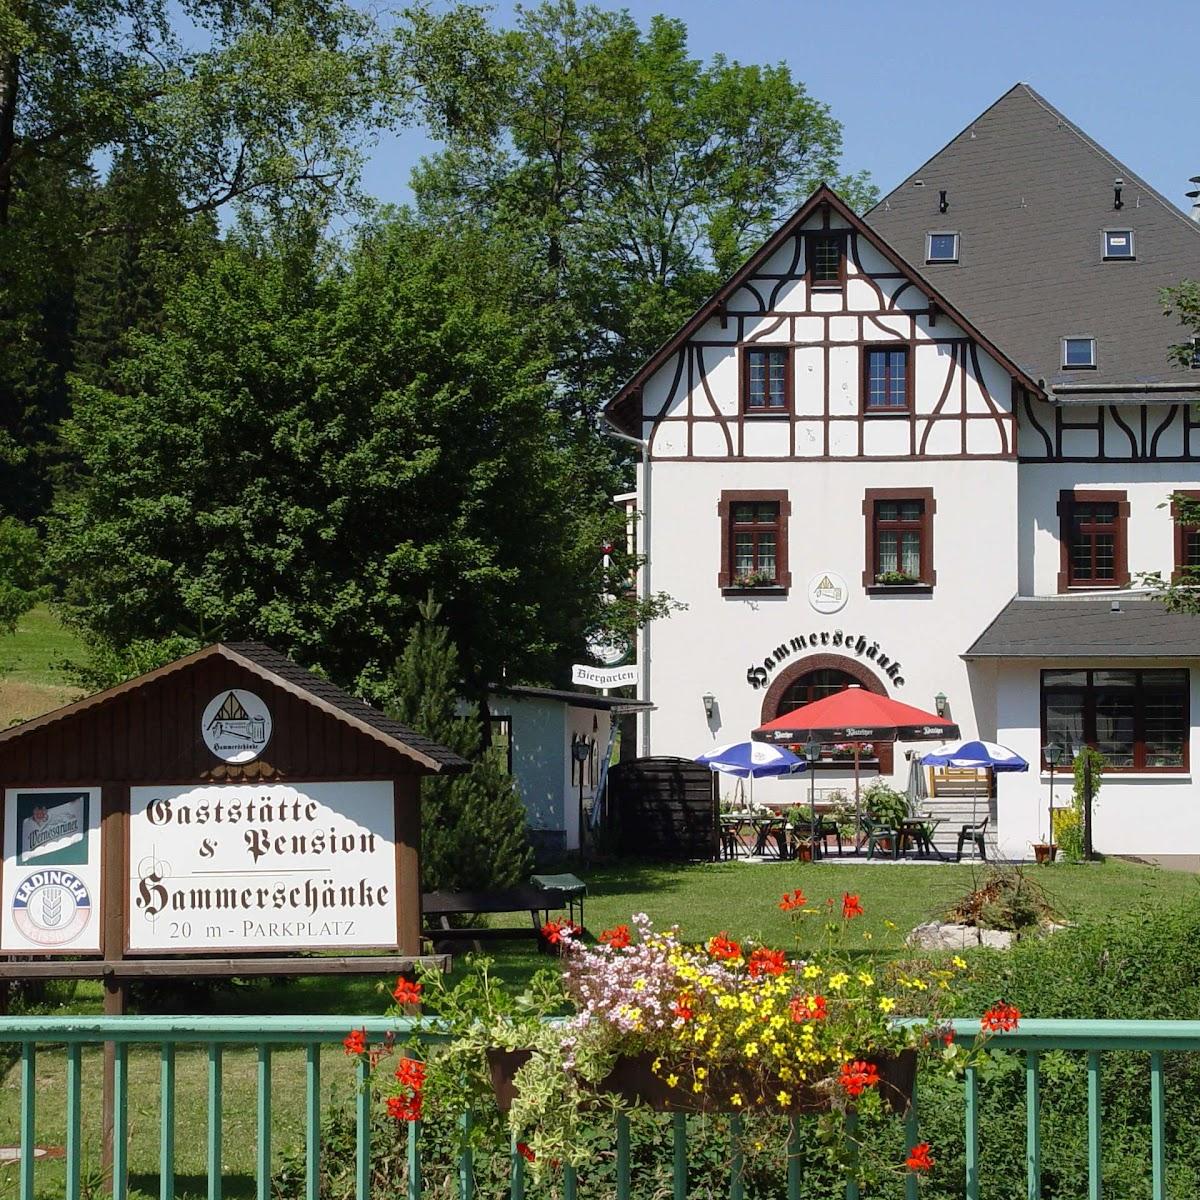 Restaurant "Gaststätte & Pension  Hammerschänke " in Eibenstock